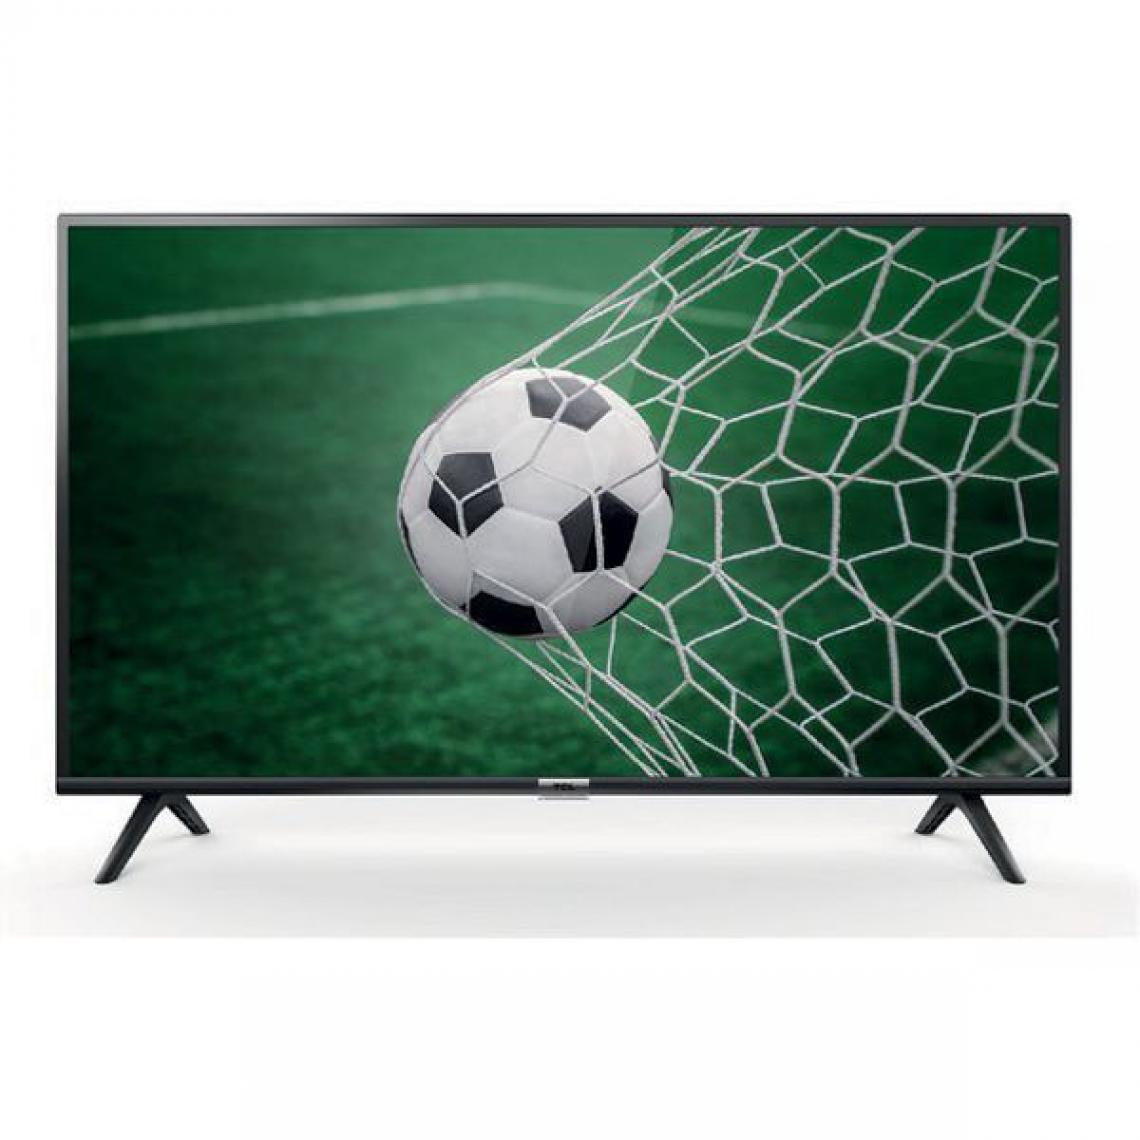 TCL - TCL 32ES560 TV LED HD 32 (81 cm) - Android TV - 2 x HDMI, 1 x USB - Classe énergétique A+ - TV 32'' et moins